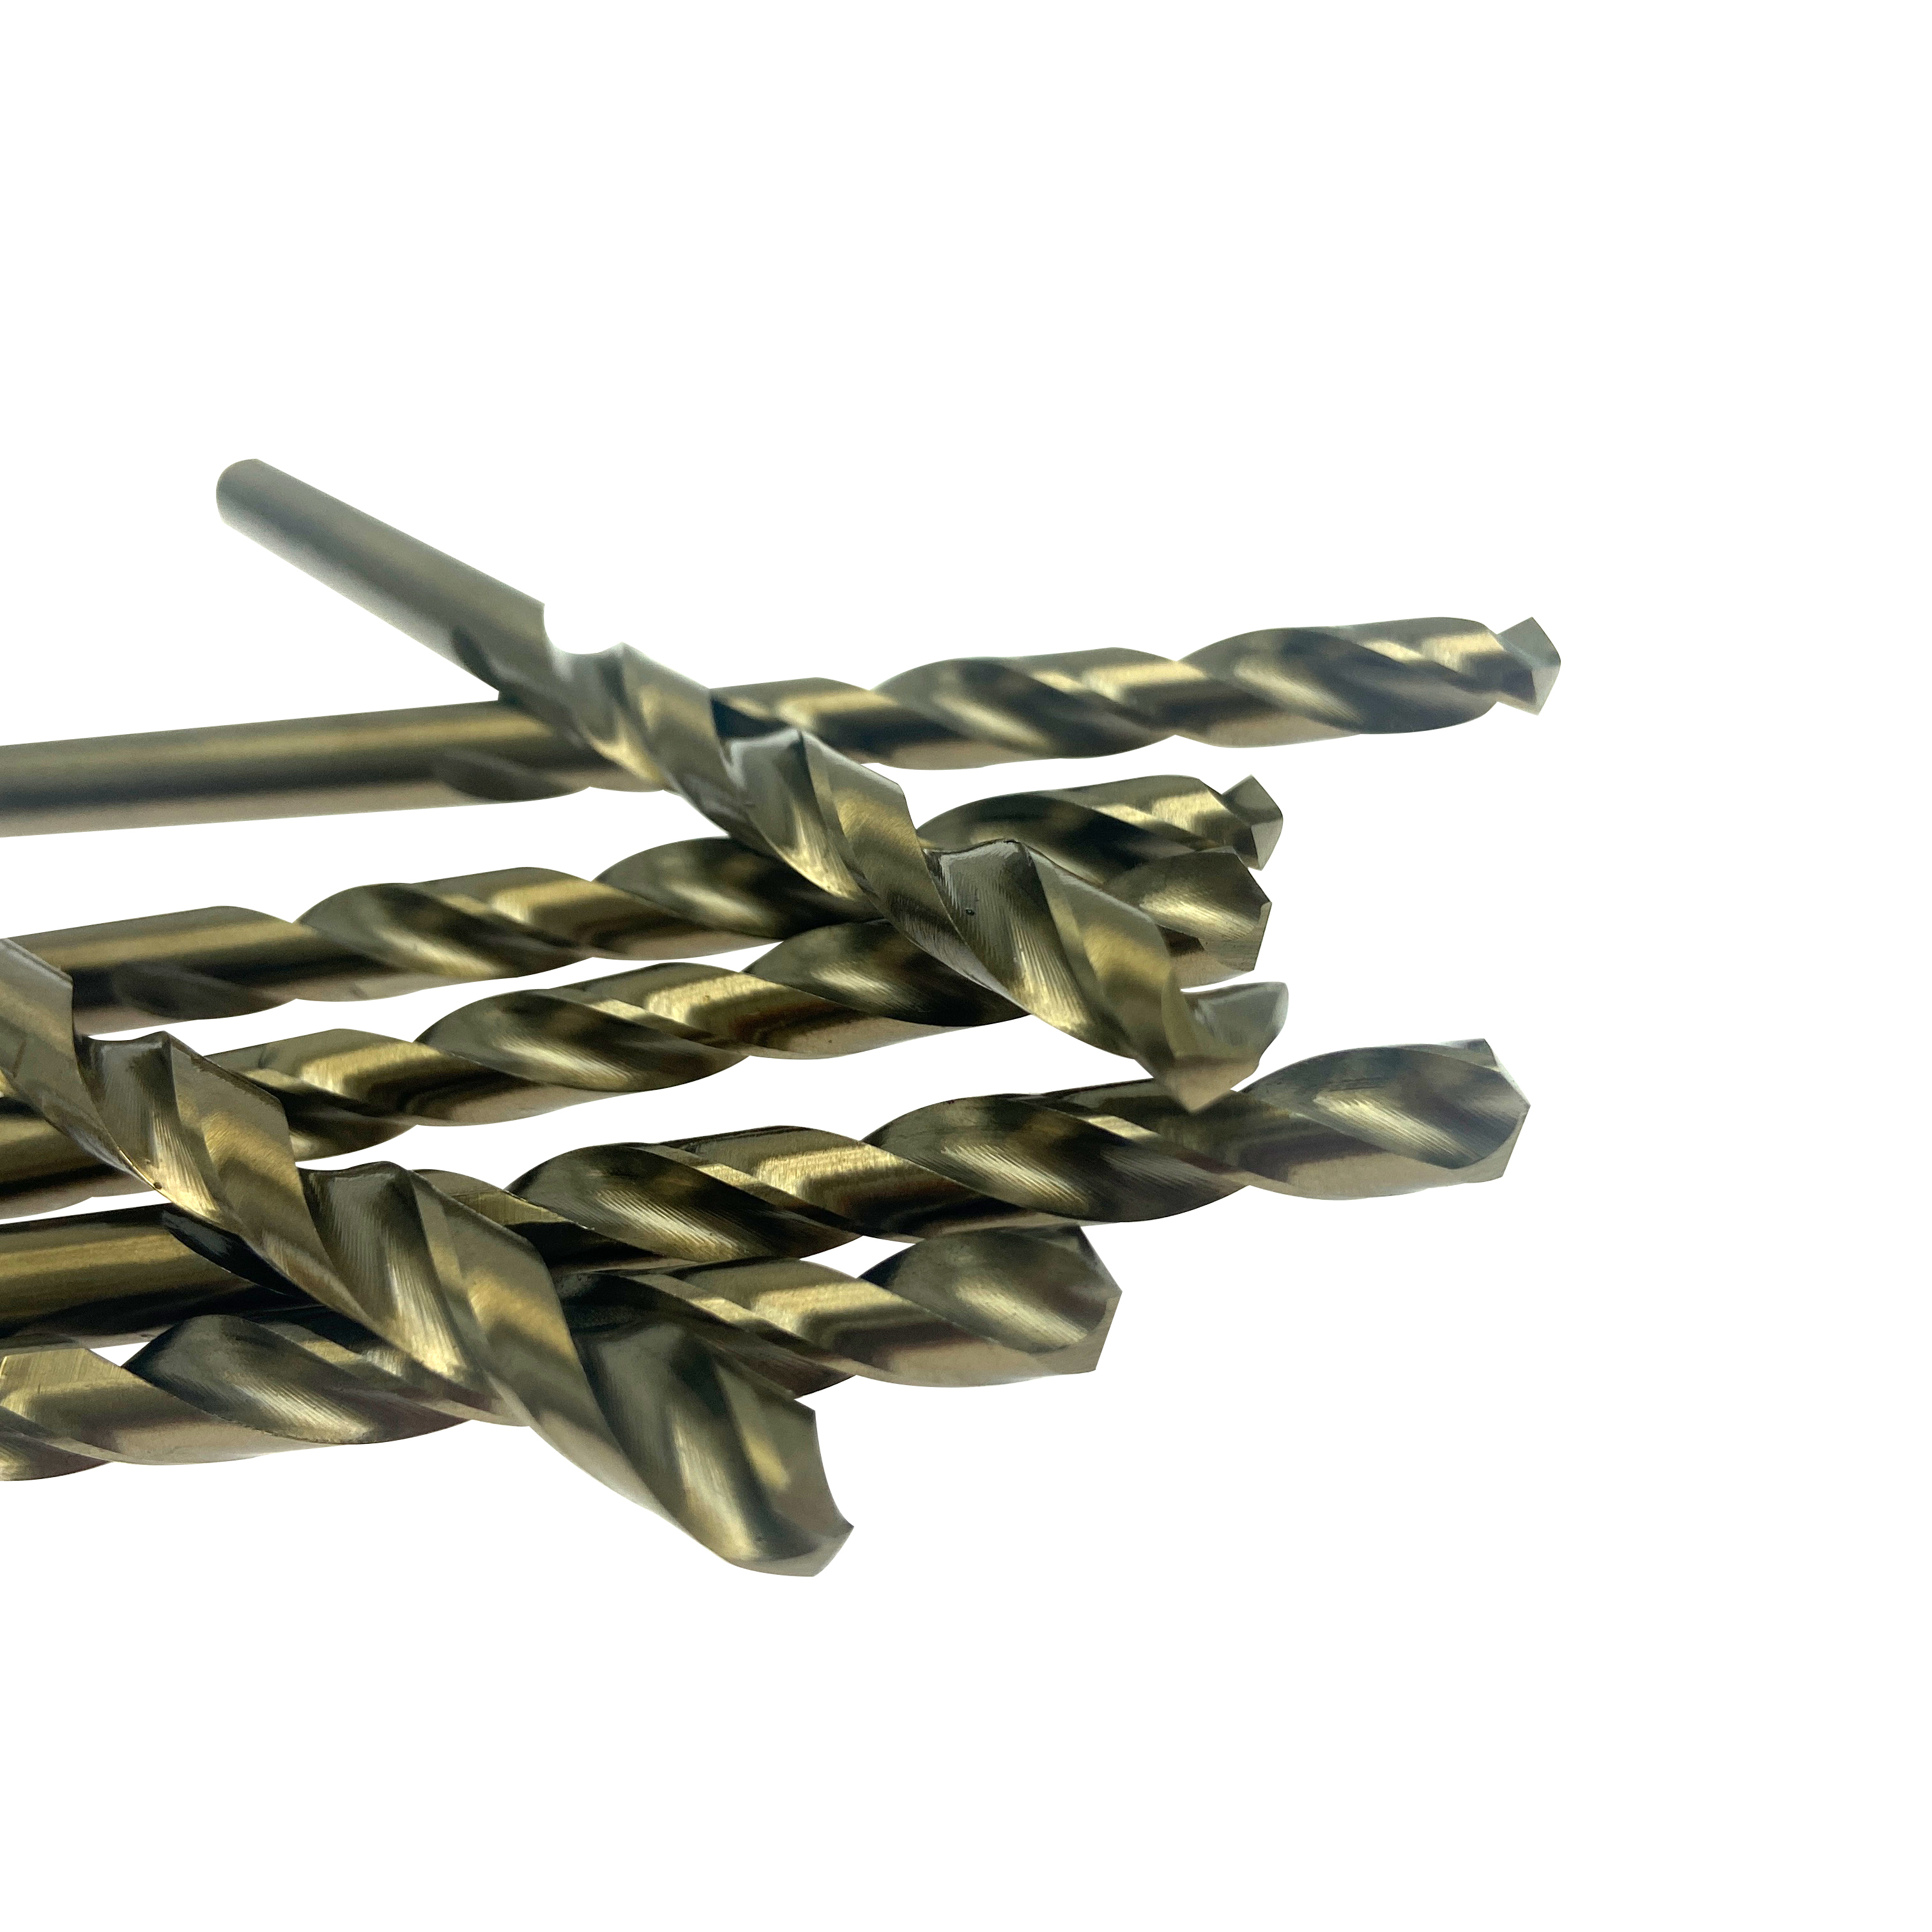 Brocas helicoidales de acero de alta velocidad M2 6542 HSS de 6 mm para taladrar metal hierro aluminio